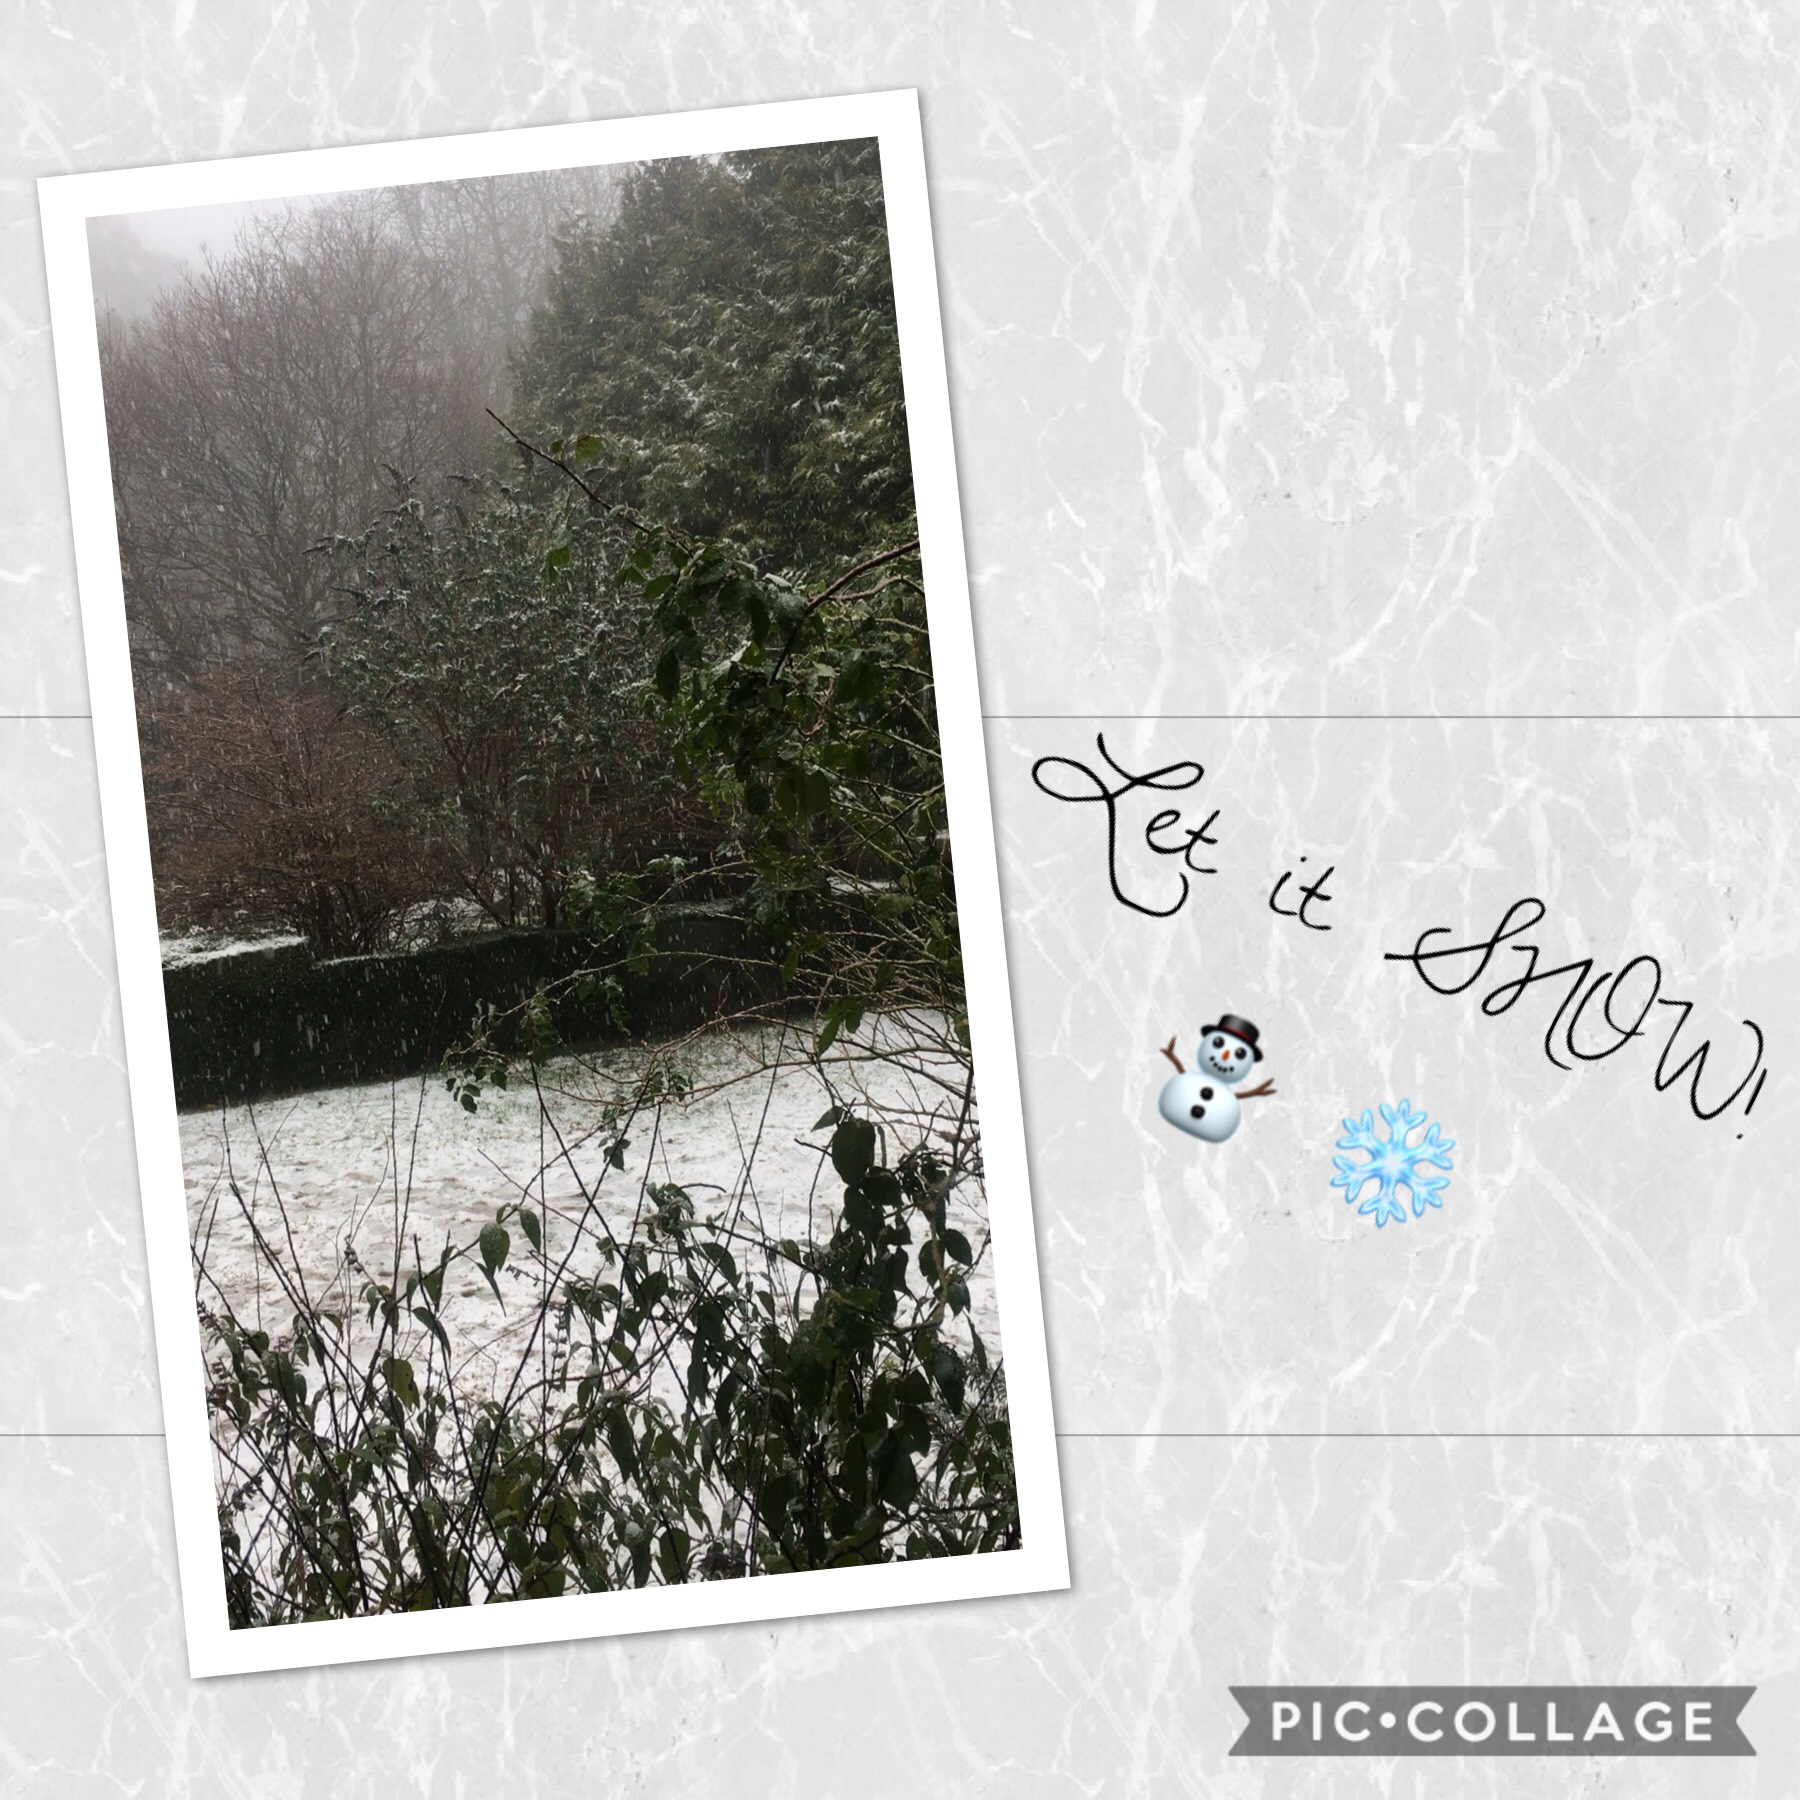 Let it snow! ⛄️ ❄️ 